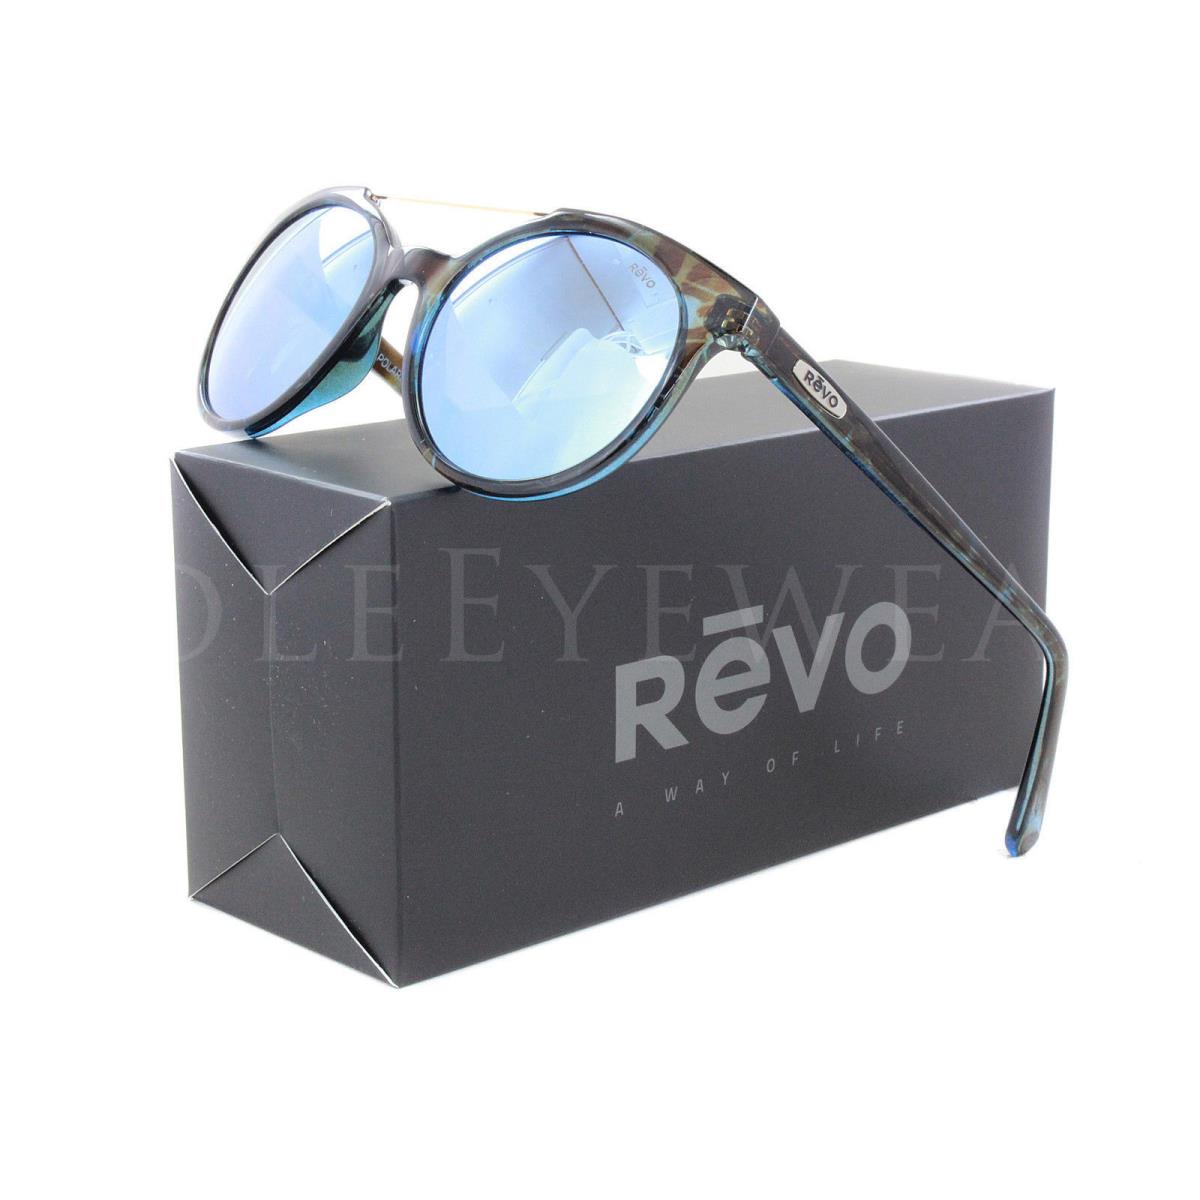 Revo sunglasses  - Tortoise Frame, Blue Lens